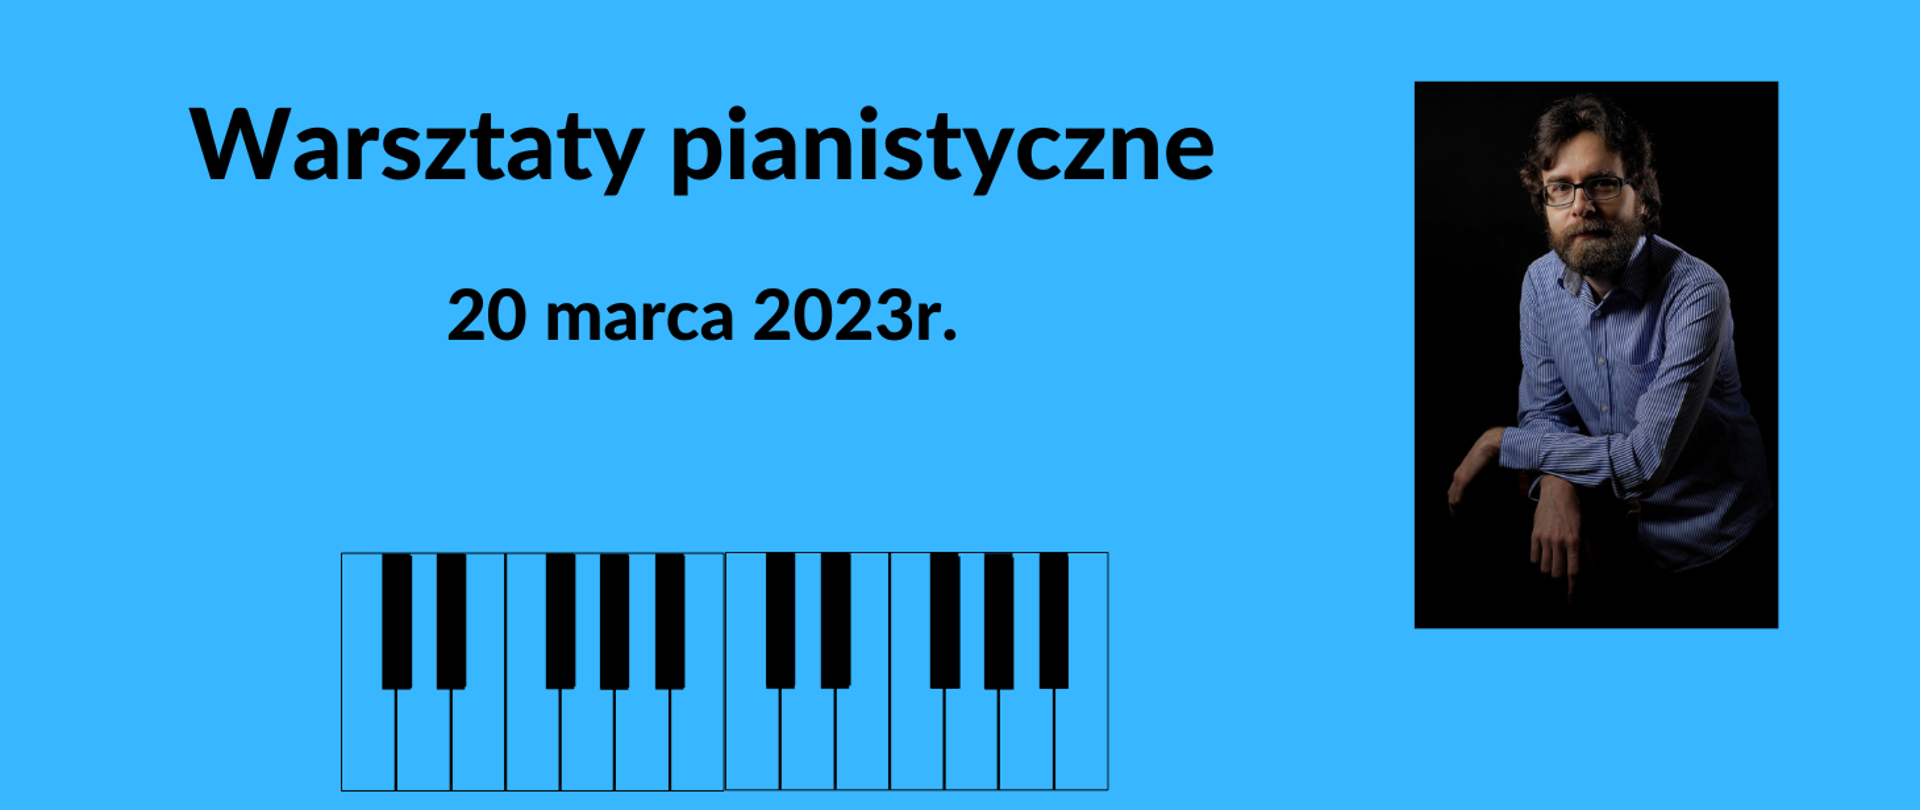 Niebieski baner z czarnym napisem informującym o warsztatach pianistycznych. Na dole baneru czarno-biała klawiatura.